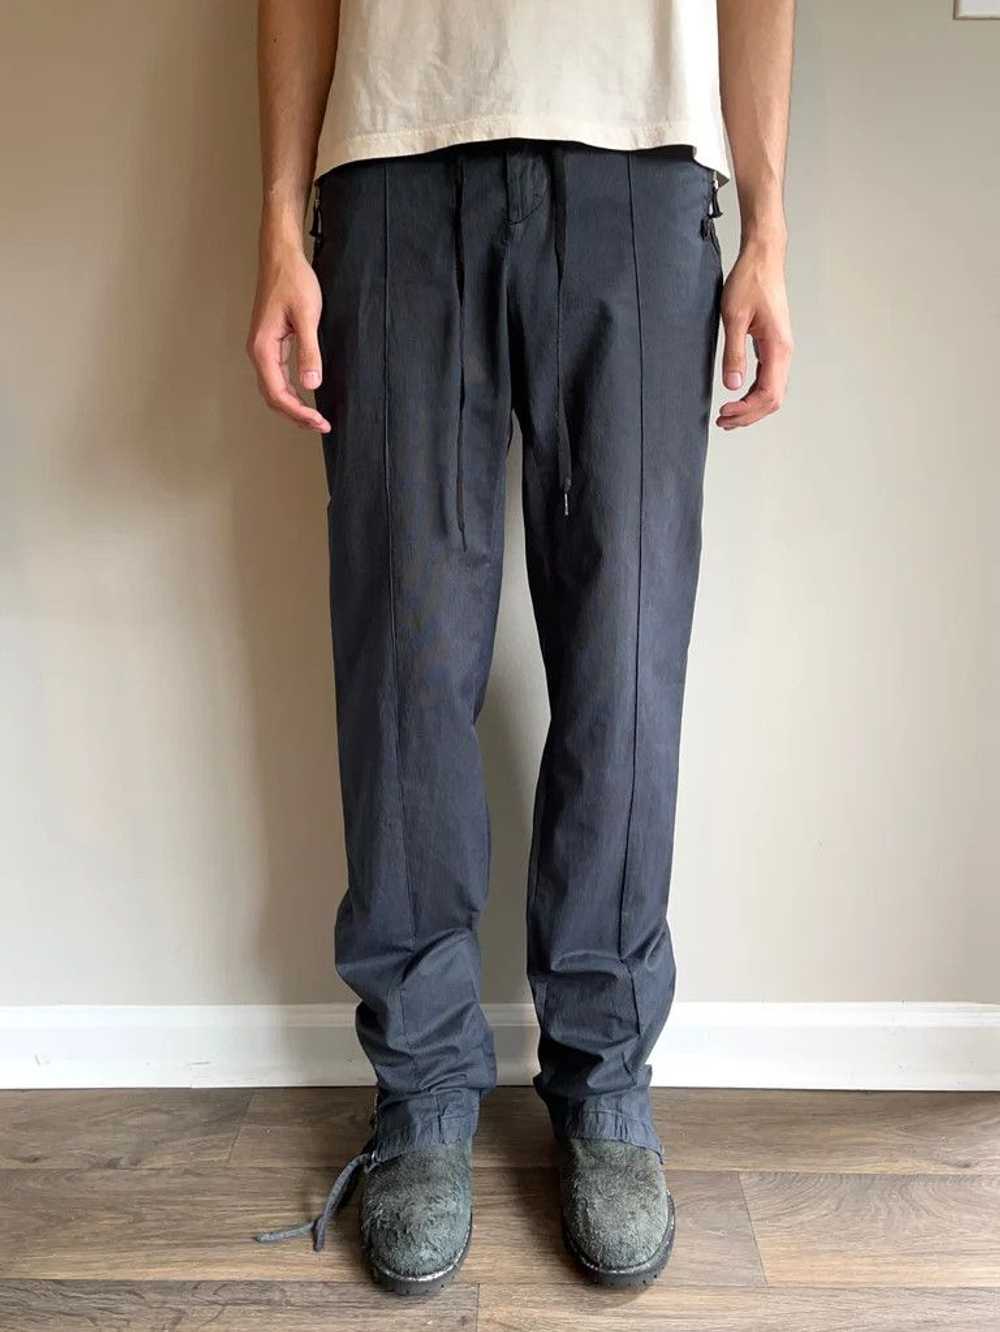 Kris Van Assche Pleated Zipper Trousers - image 6